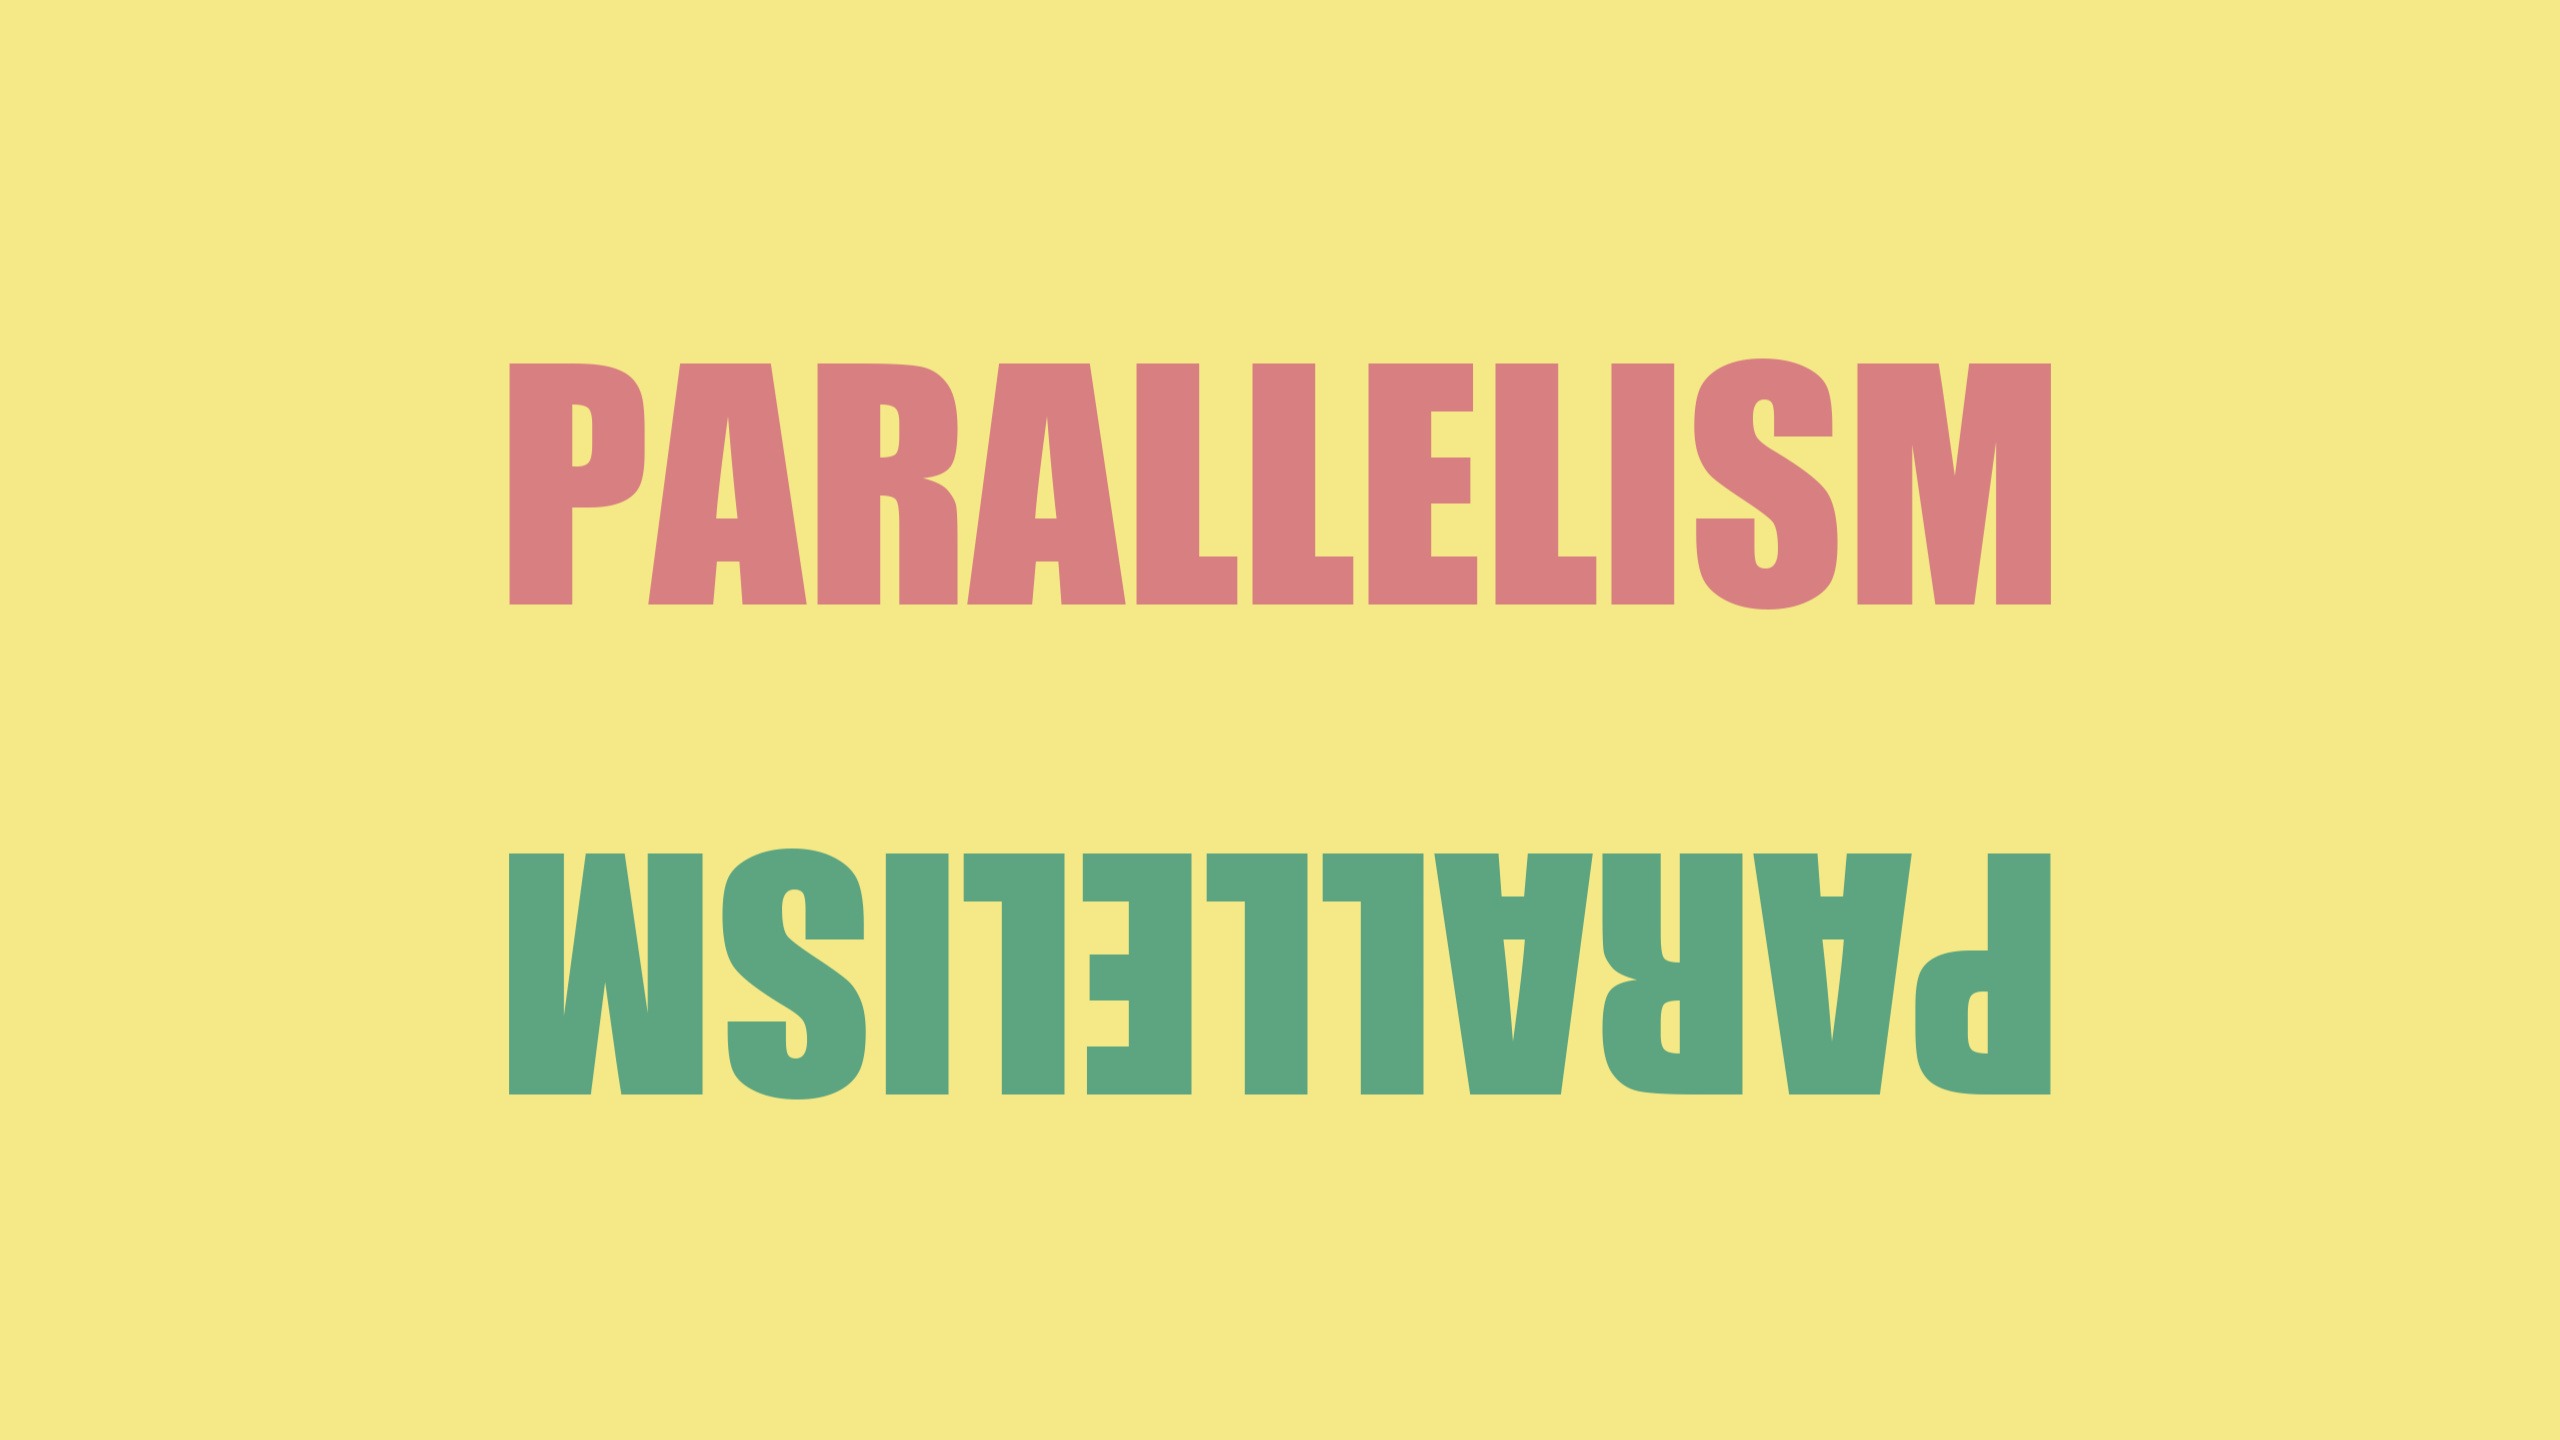 grammar clipart parallelism